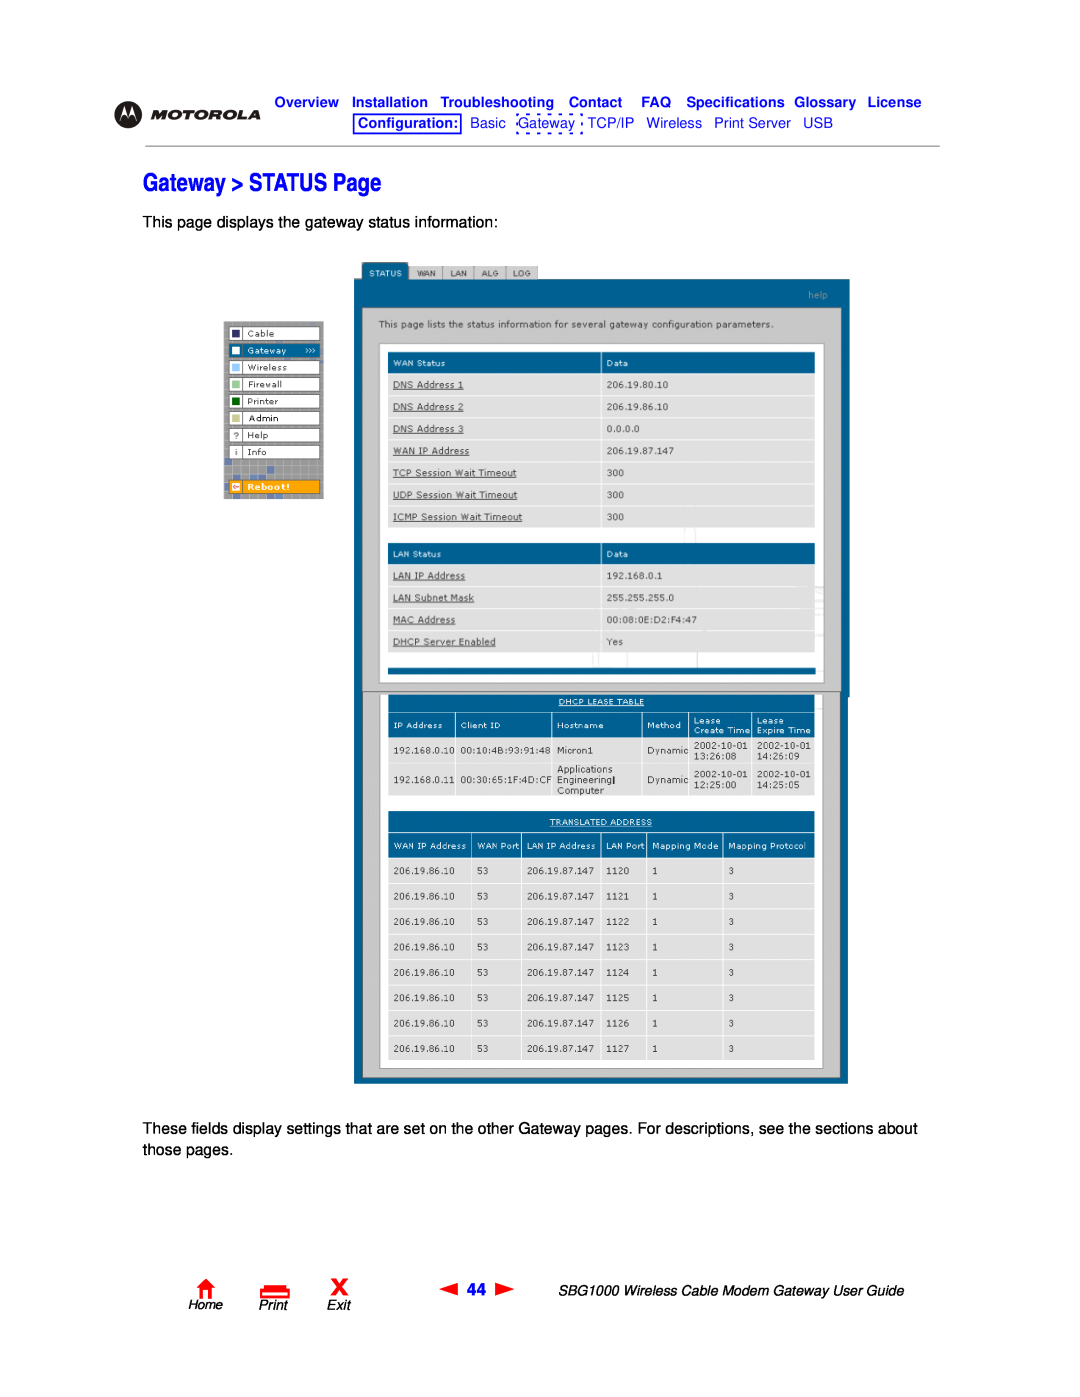 Motorola SBG1000 manual Gateway STATUS Page, This page displays the gateway status information, Home Print Exit 